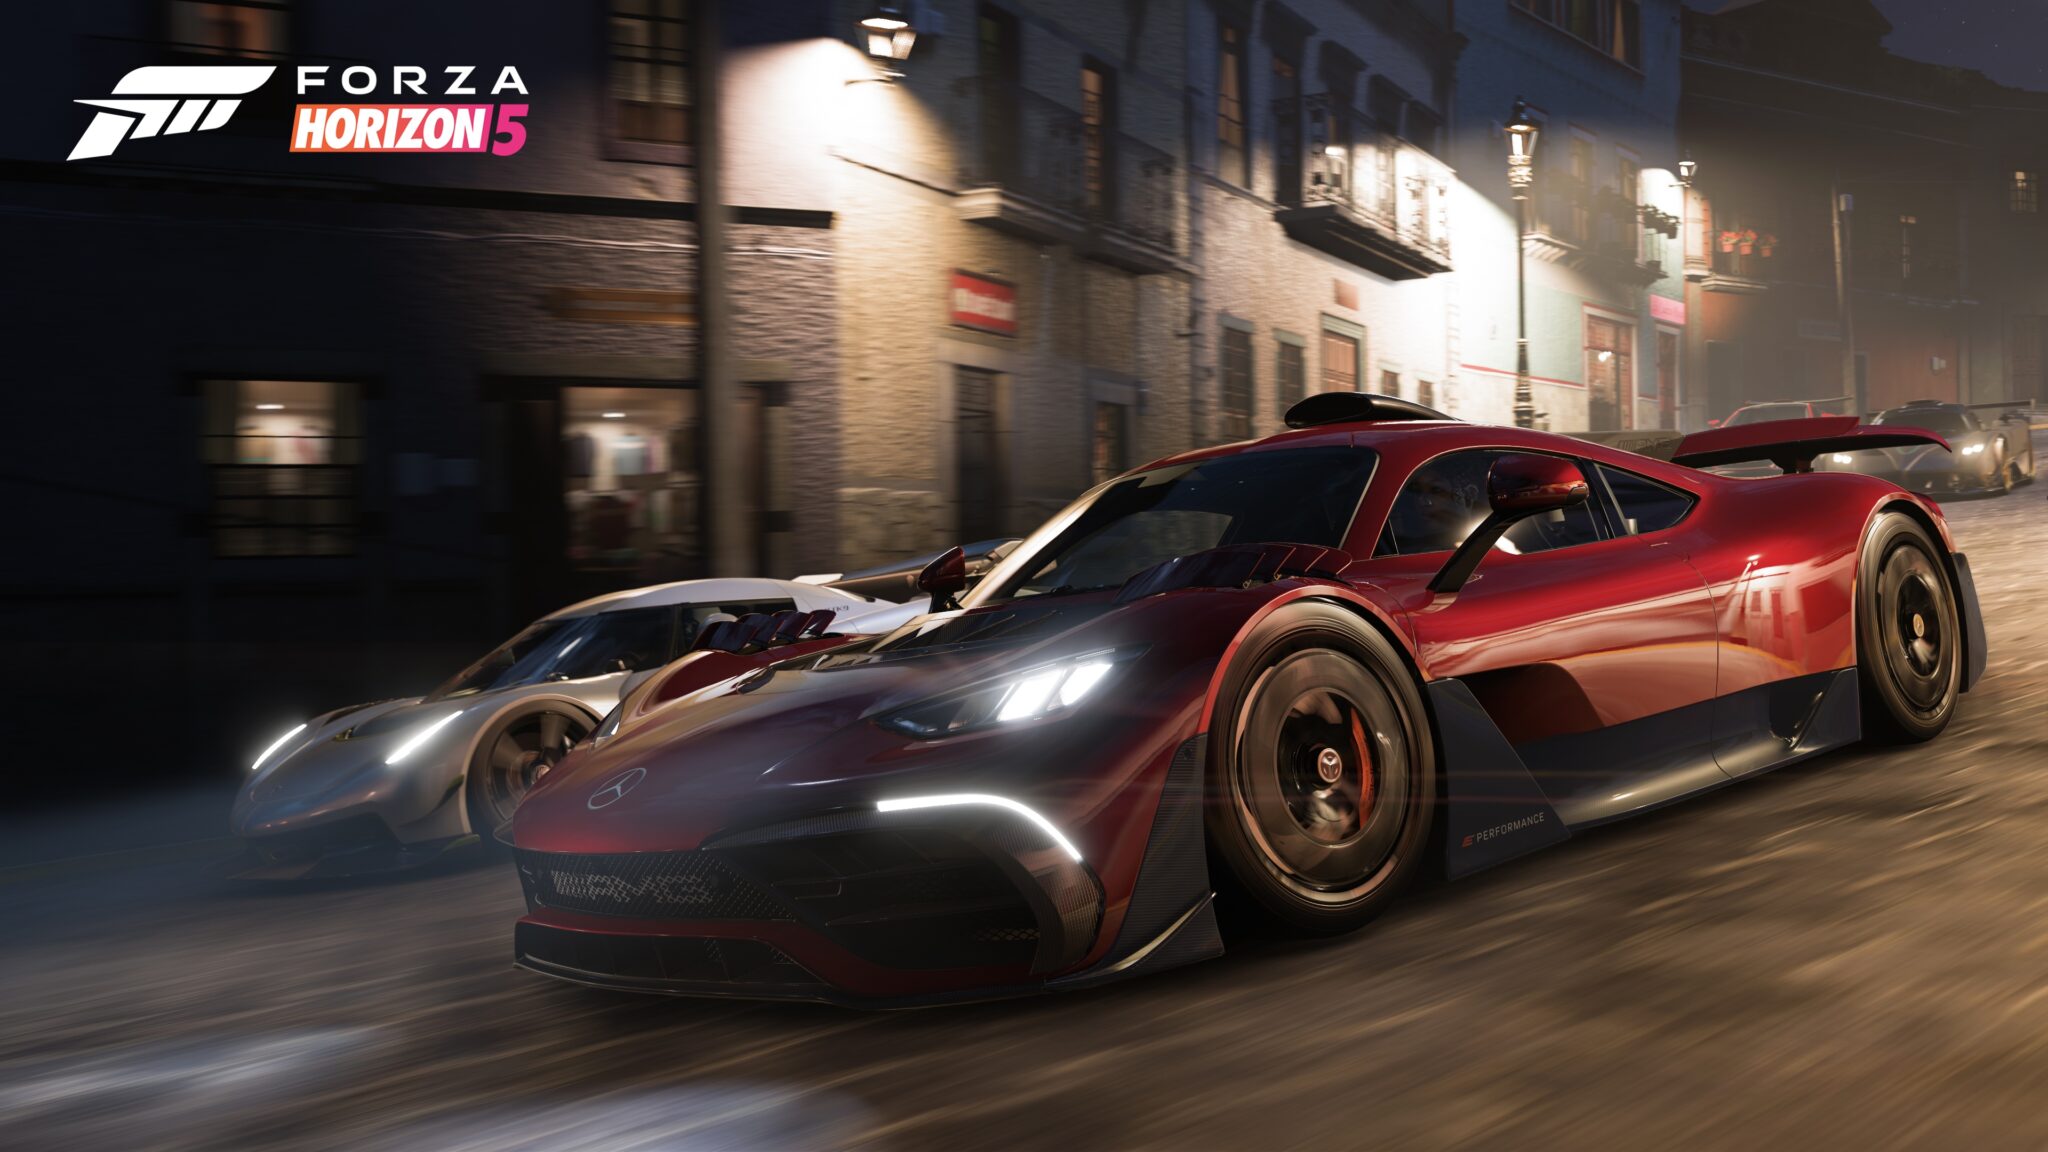 Forza Horizon 5 oferece uma fantasia clássica de corrida, claro - mas não é preciso persegui-la